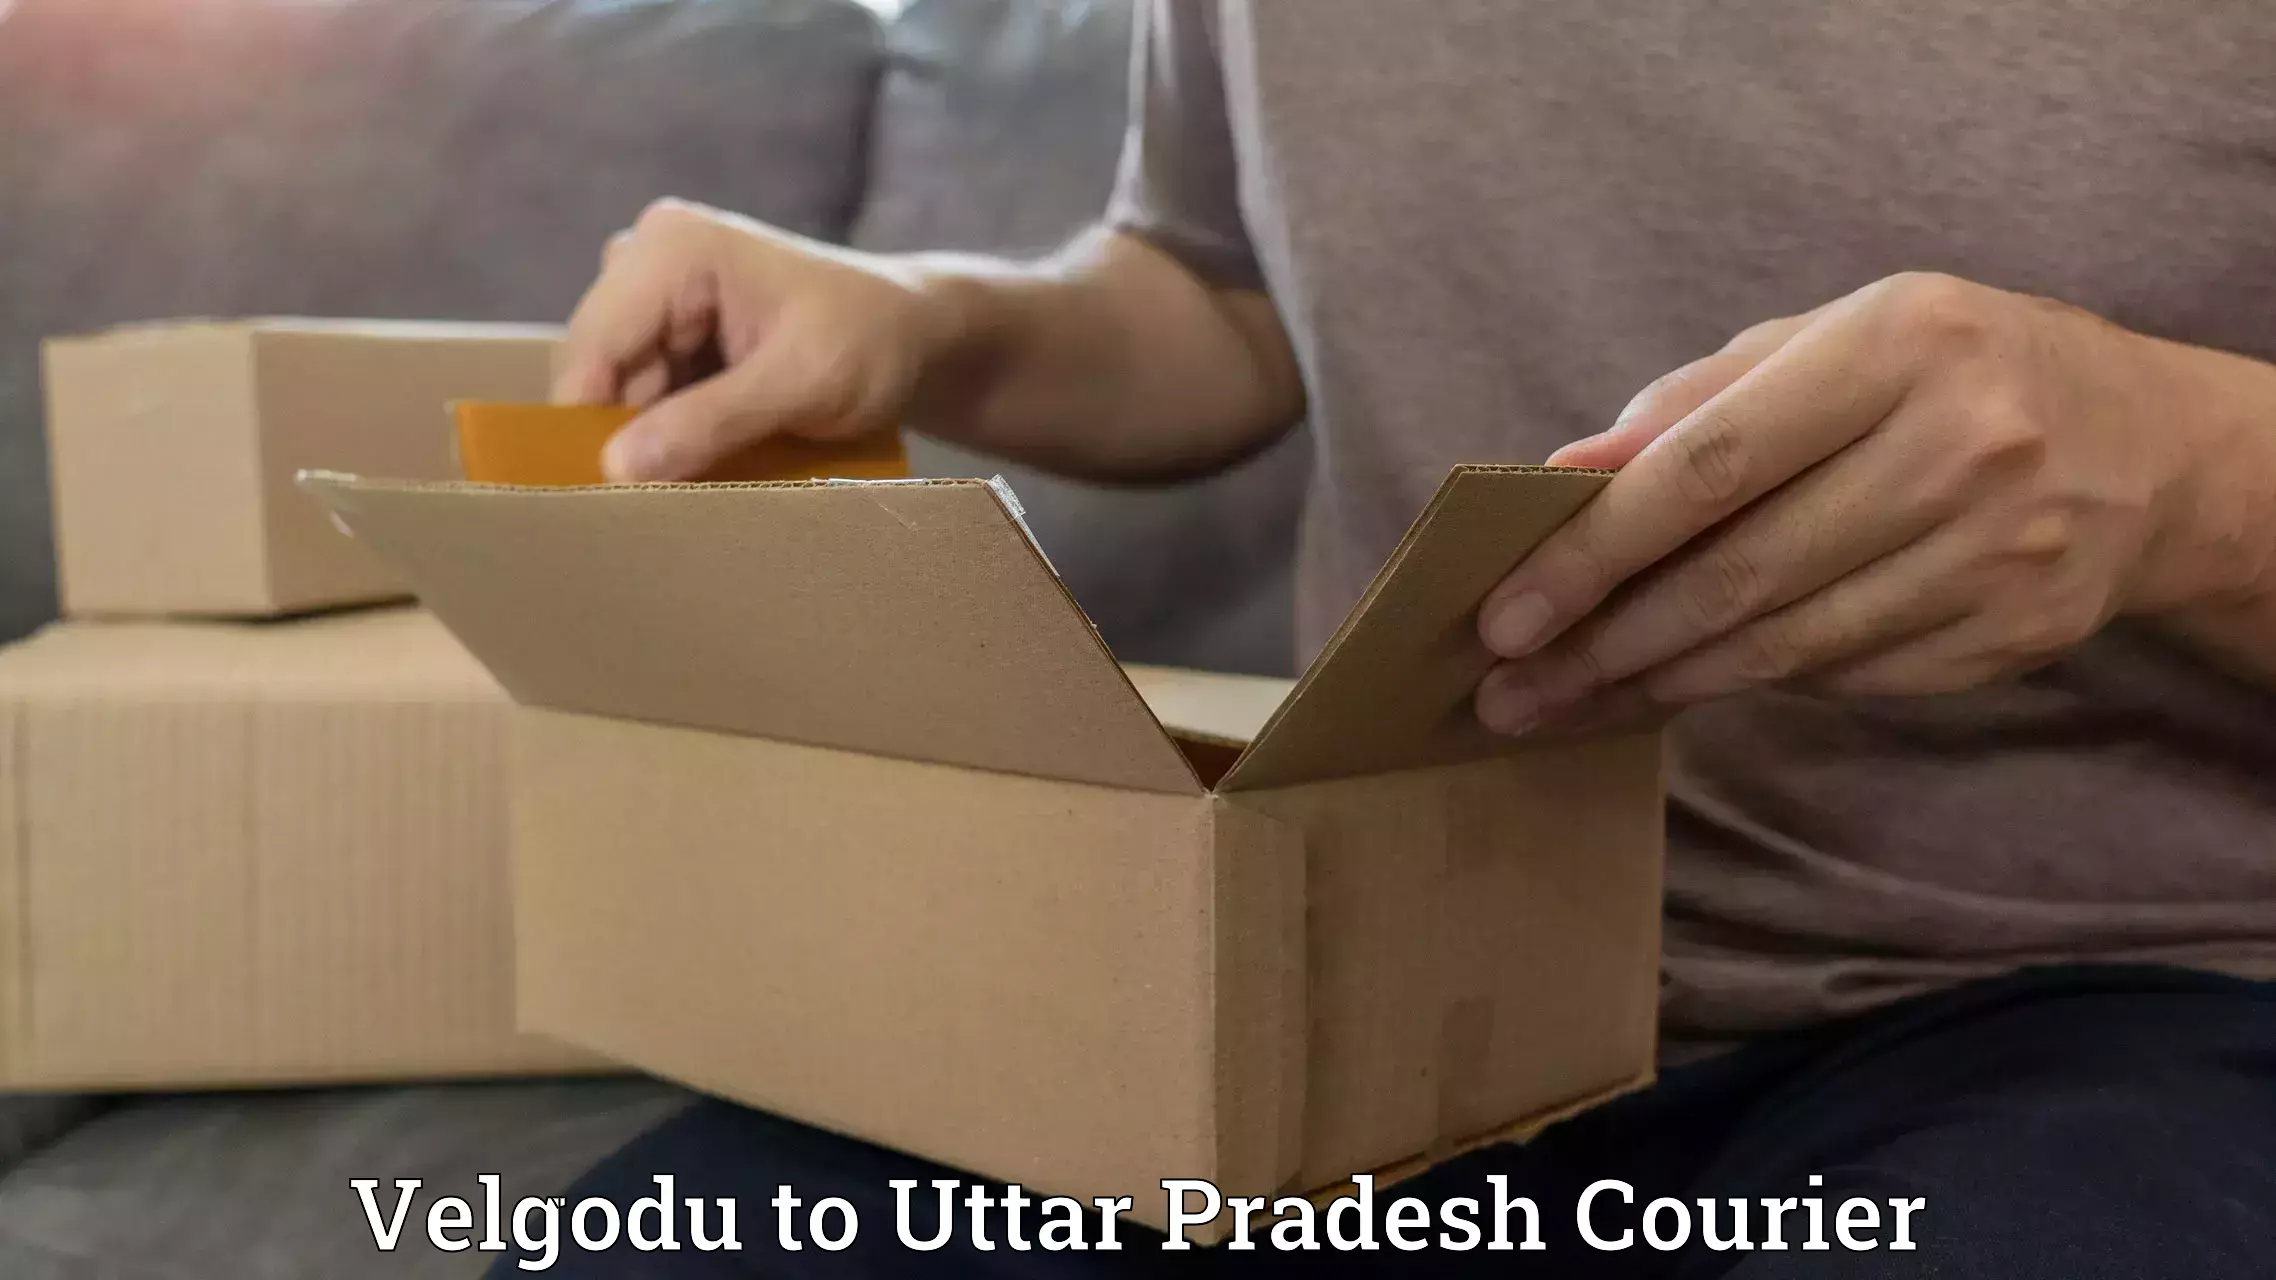 Express logistics providers Velgodu to Uttar Pradesh